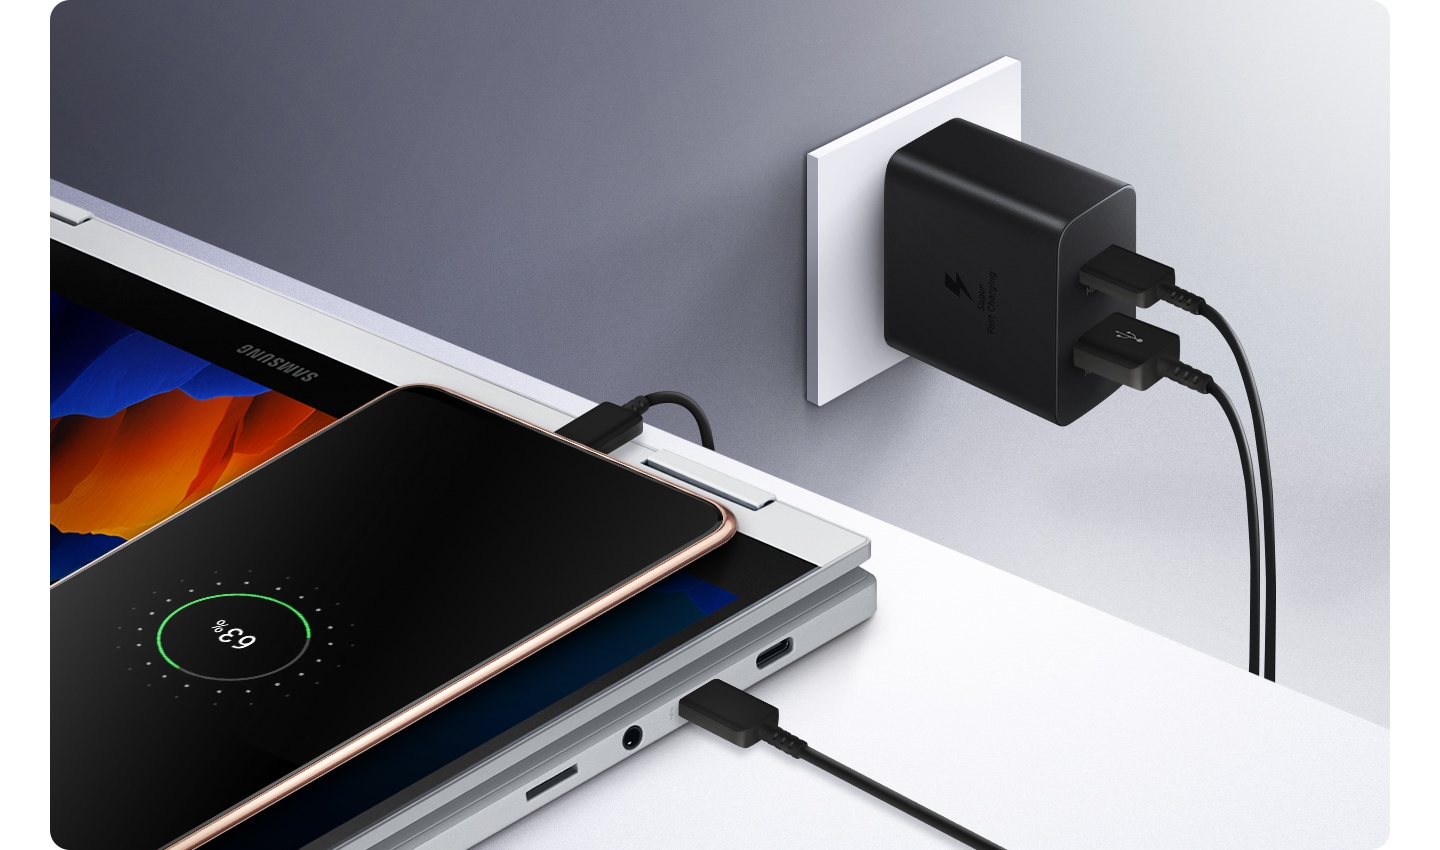 Der Power Adapter Duo ist an einer Steckdose in einer Wand eingesteckt und lädt ein Smartphone und einen Laptop gleichzeitig.